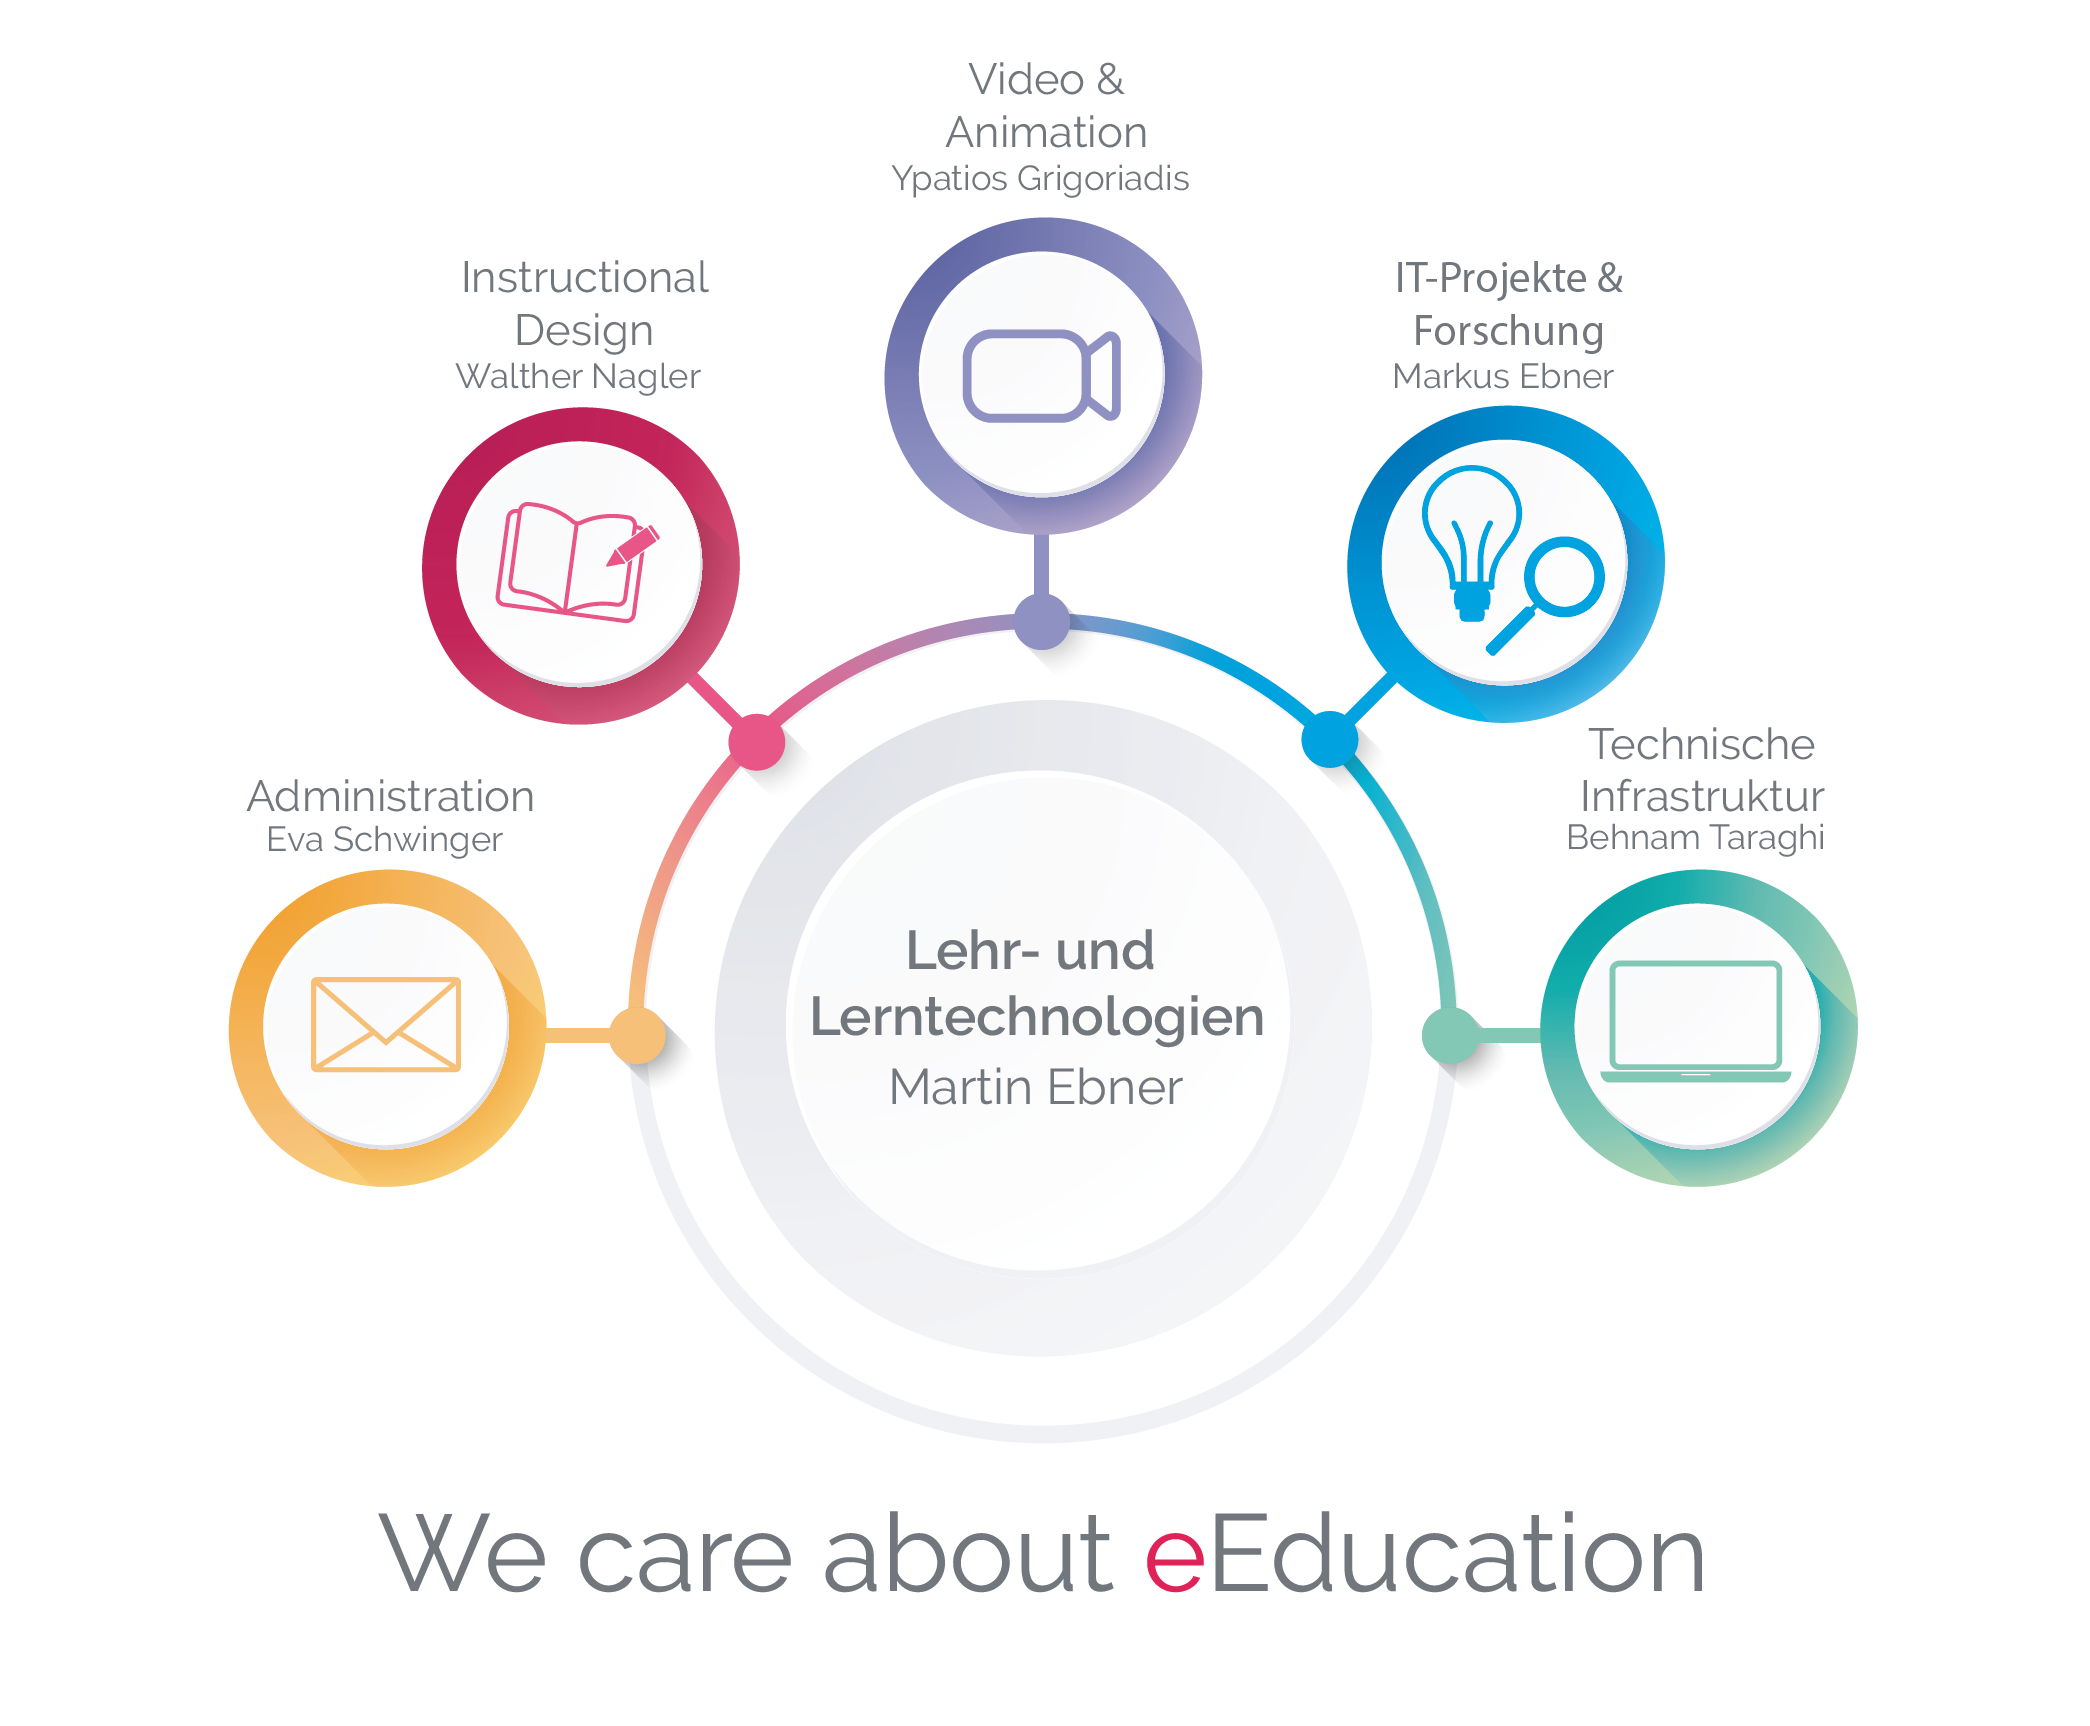 Organigramm LLT mit den fünf Bereichen EdTech, Verwaltung, Forschung, Support und Video